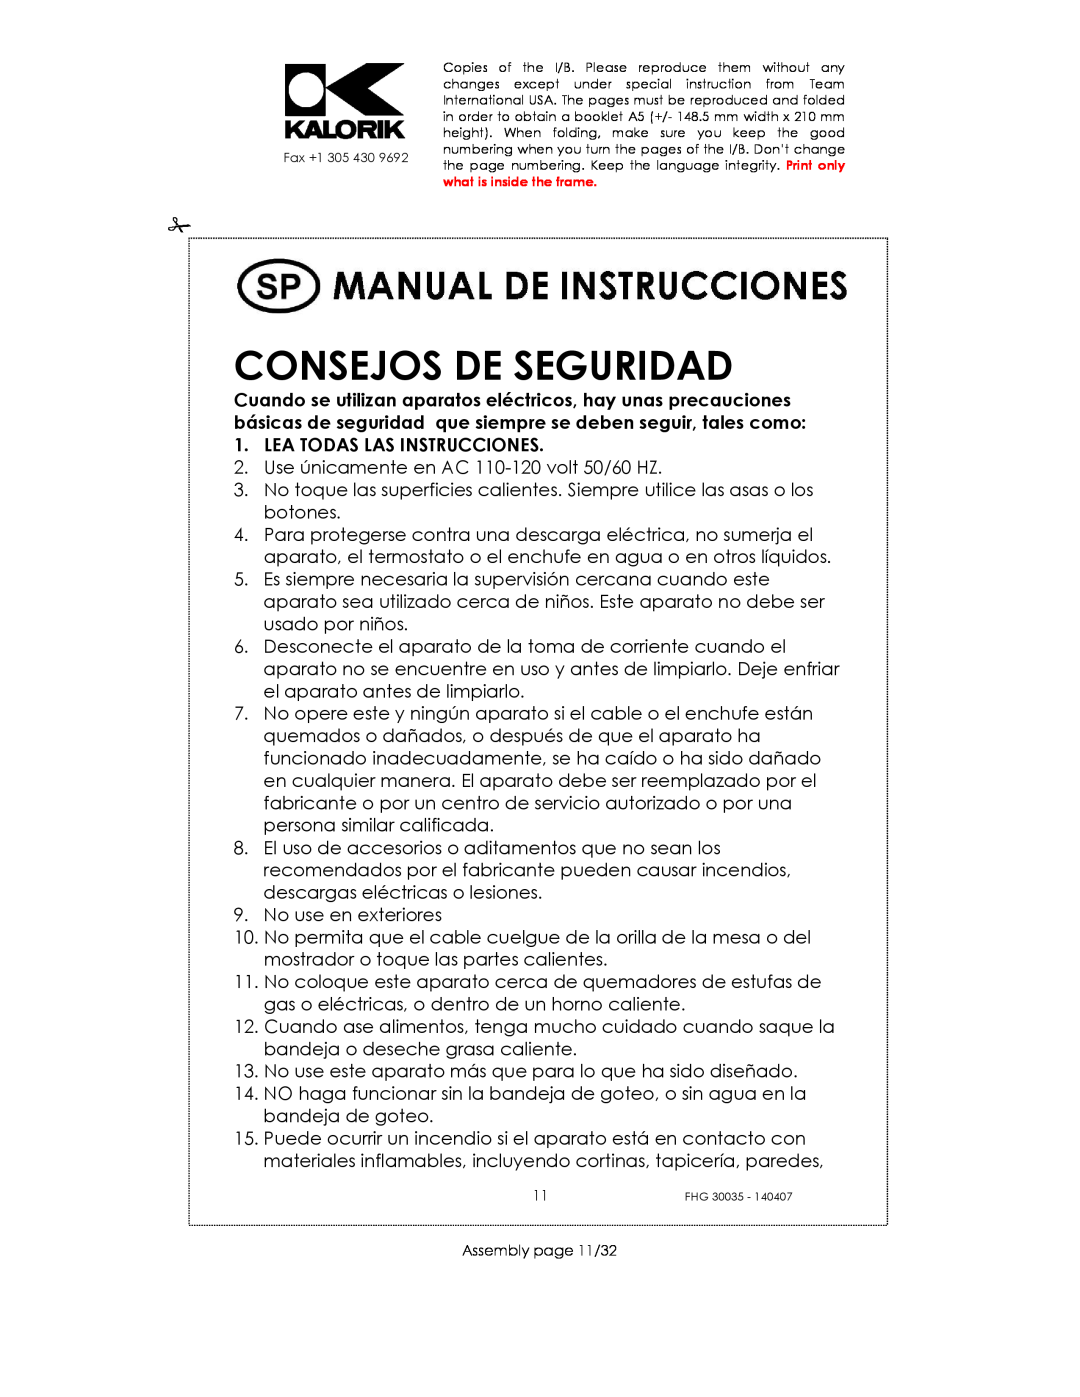 Kalorik FHG 30035 manual Consejos De Seguridad, Lea Todas Las Instrucciones 